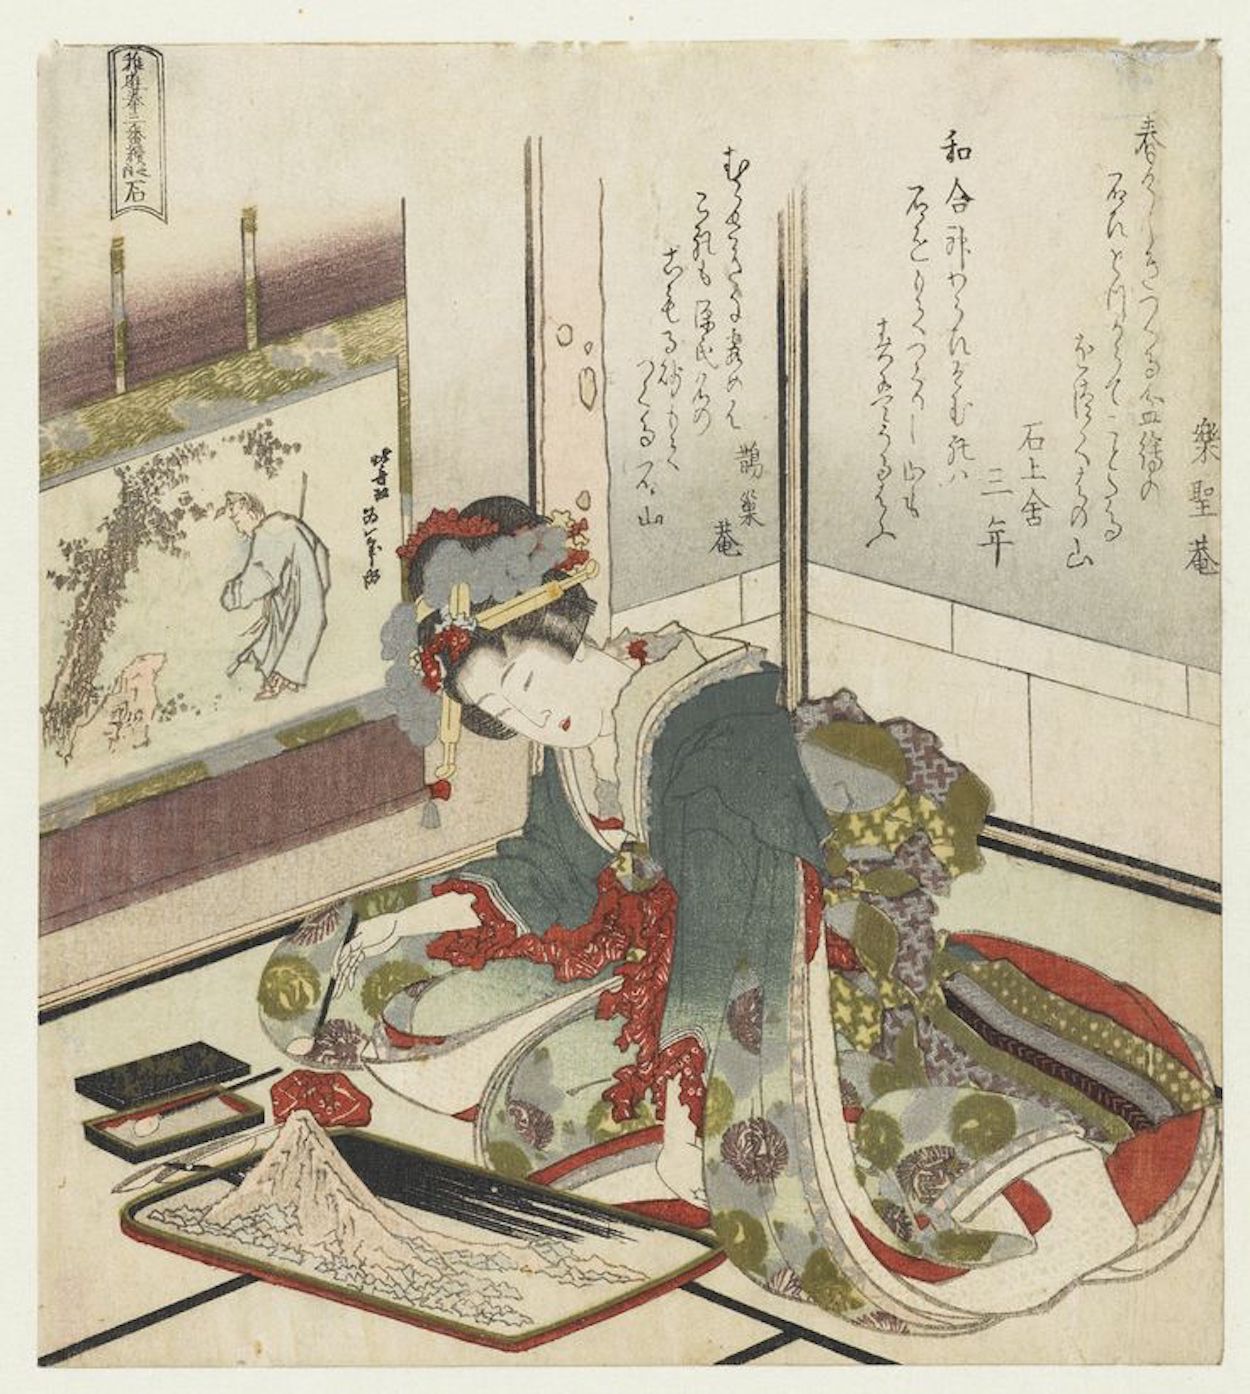 Pedra by Katsushika Hokusai - 1823 coleção privada